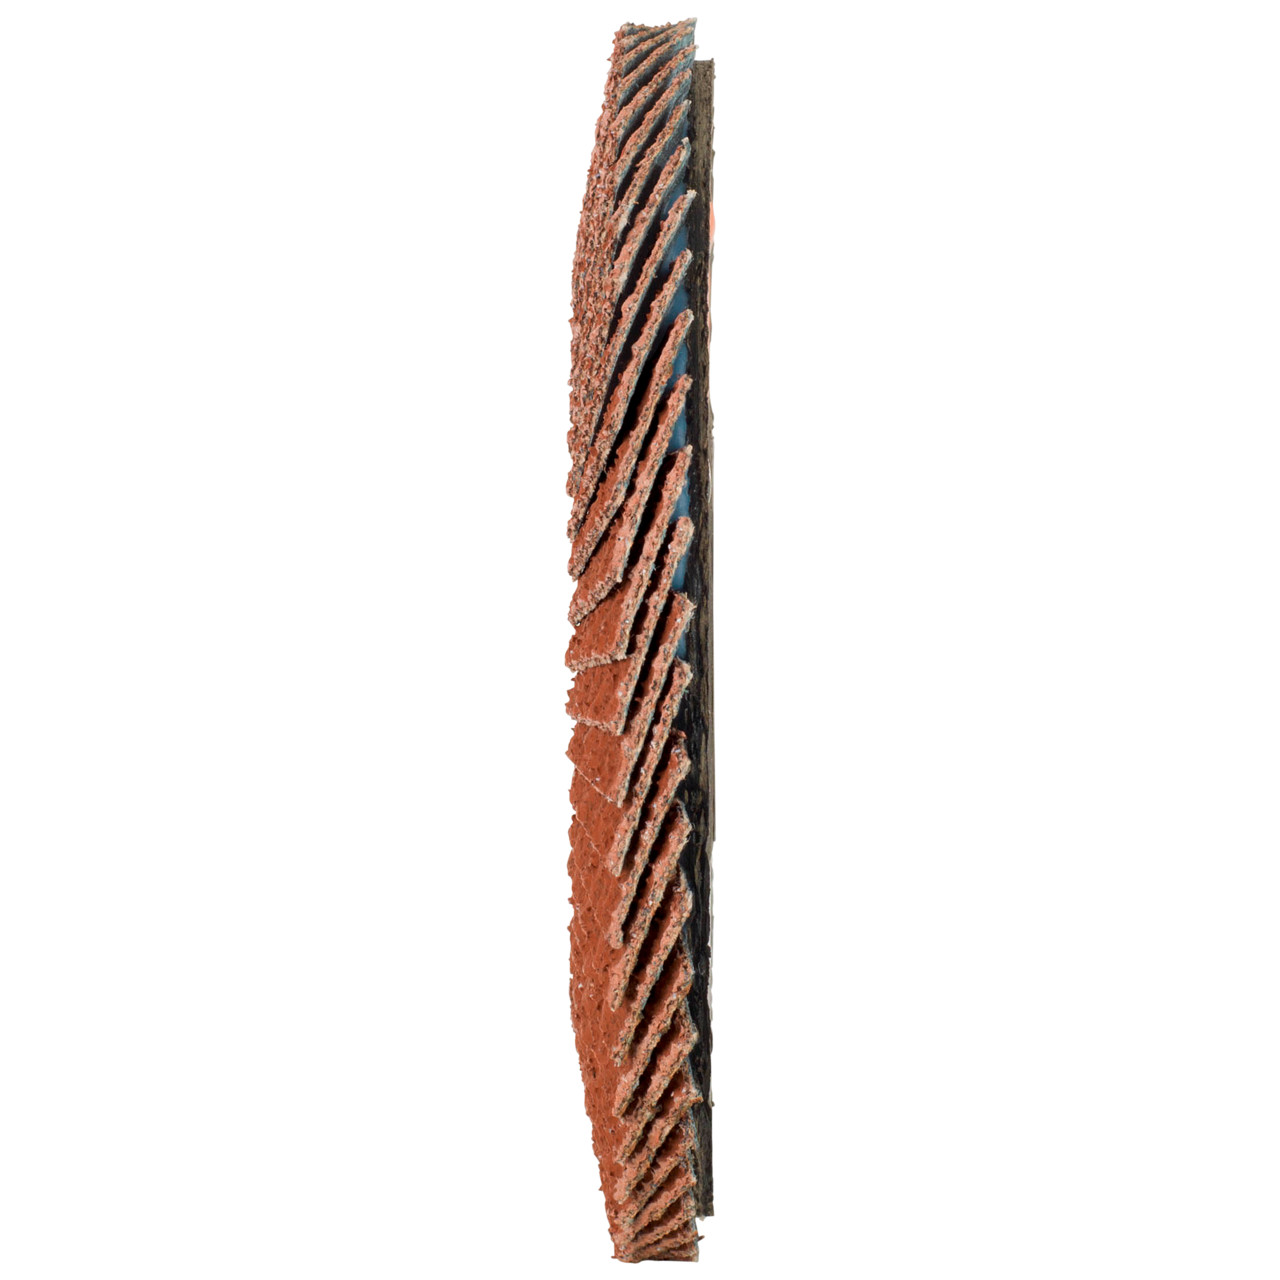 Tyrolit Getande borgring DxH 125x22,23 Voor non-ferrometalen, P60, vorm: 27A - geslingerde versie (glasvezeldragerhuisversie), Art. 707012